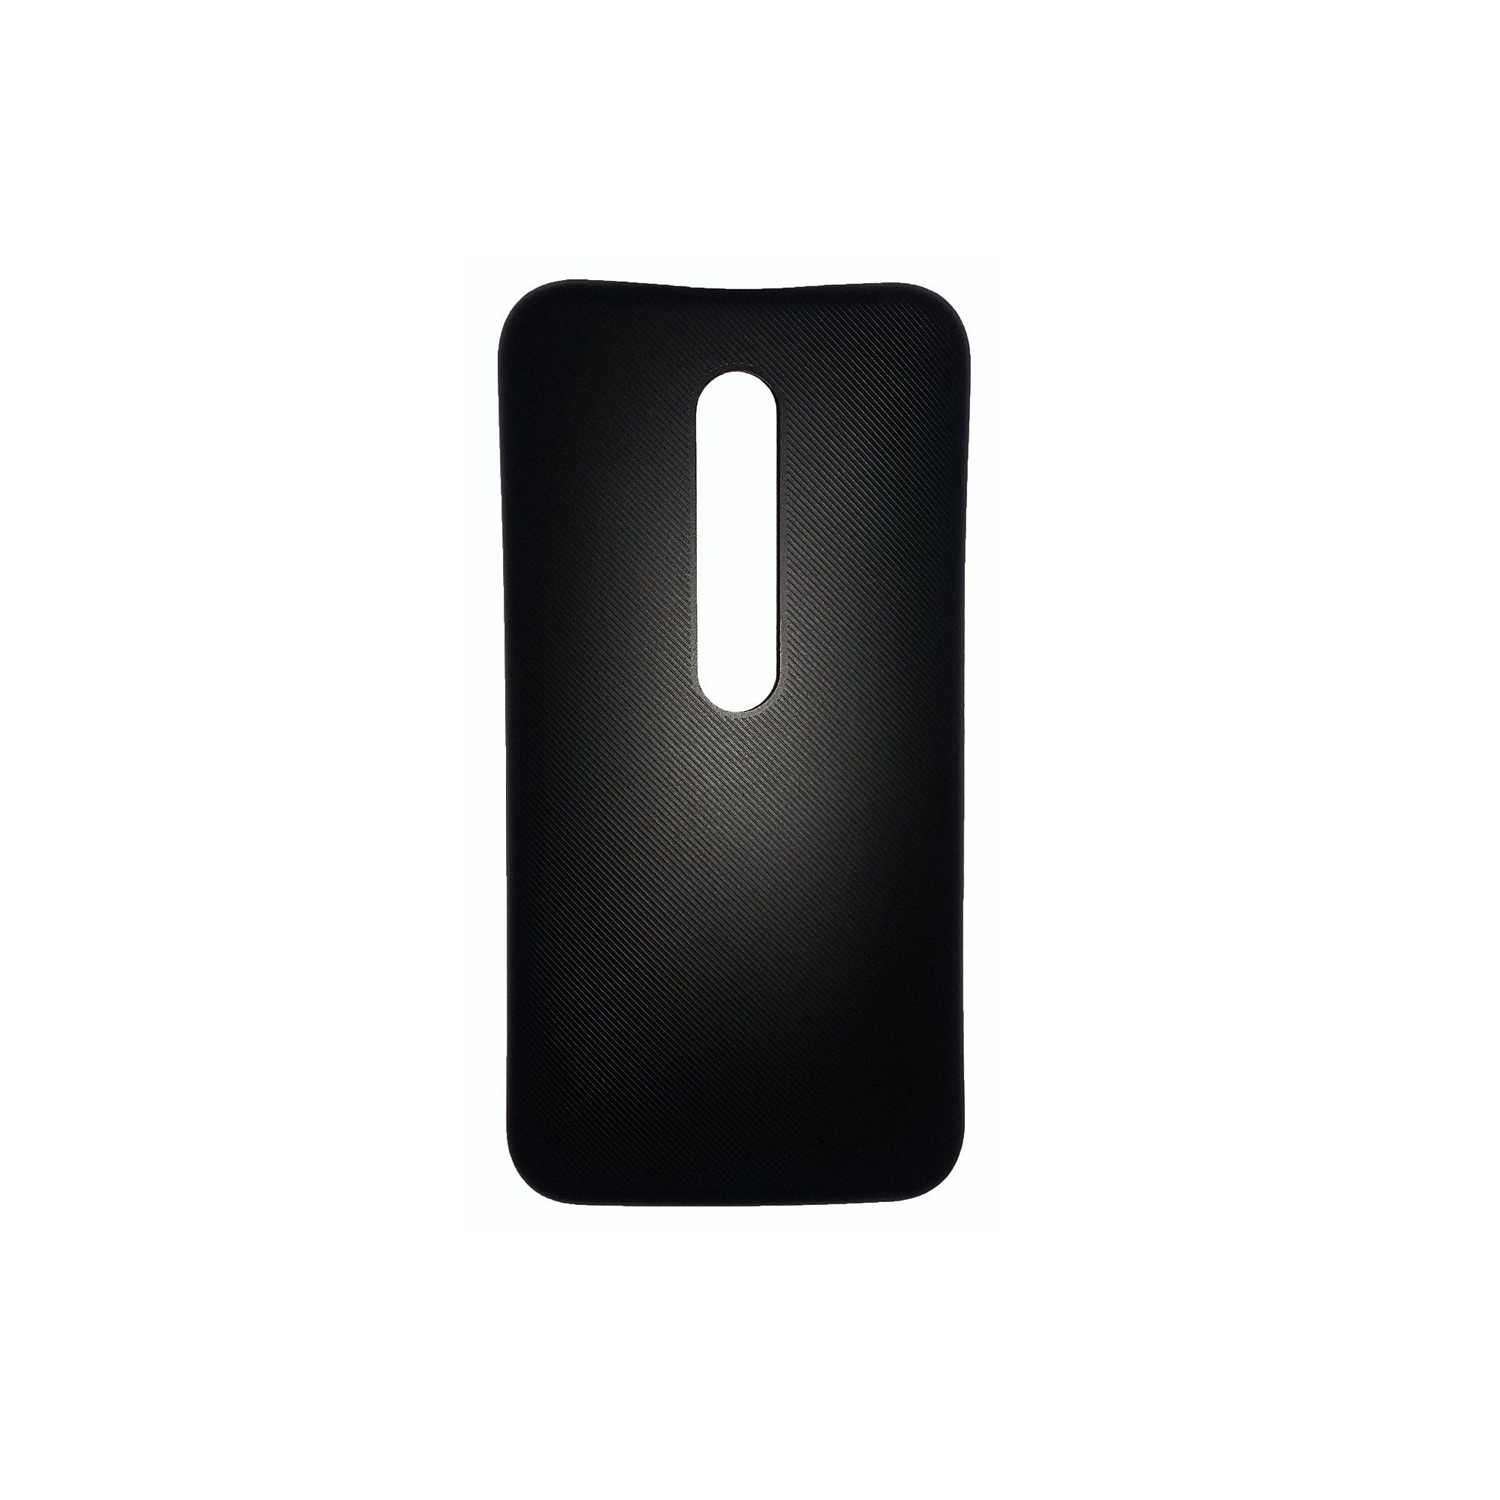 Motorola Moto G3 Battery Door Replacement - Black